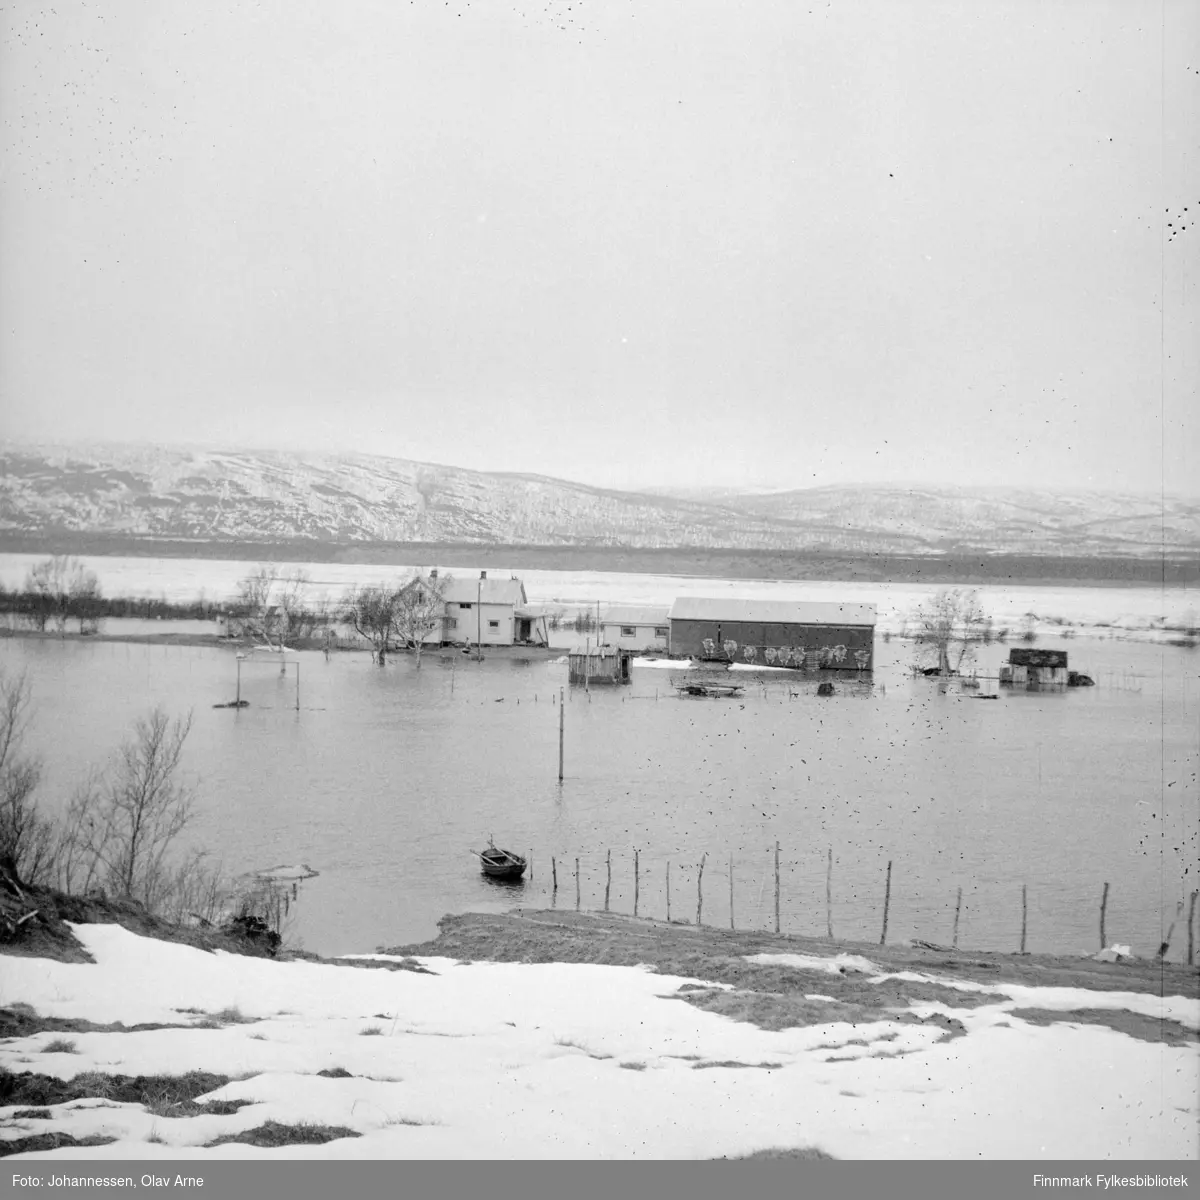 Foto av Flom i Tana, Båteng (Finnmark)

Foto trolig tatt på 1970-tallet